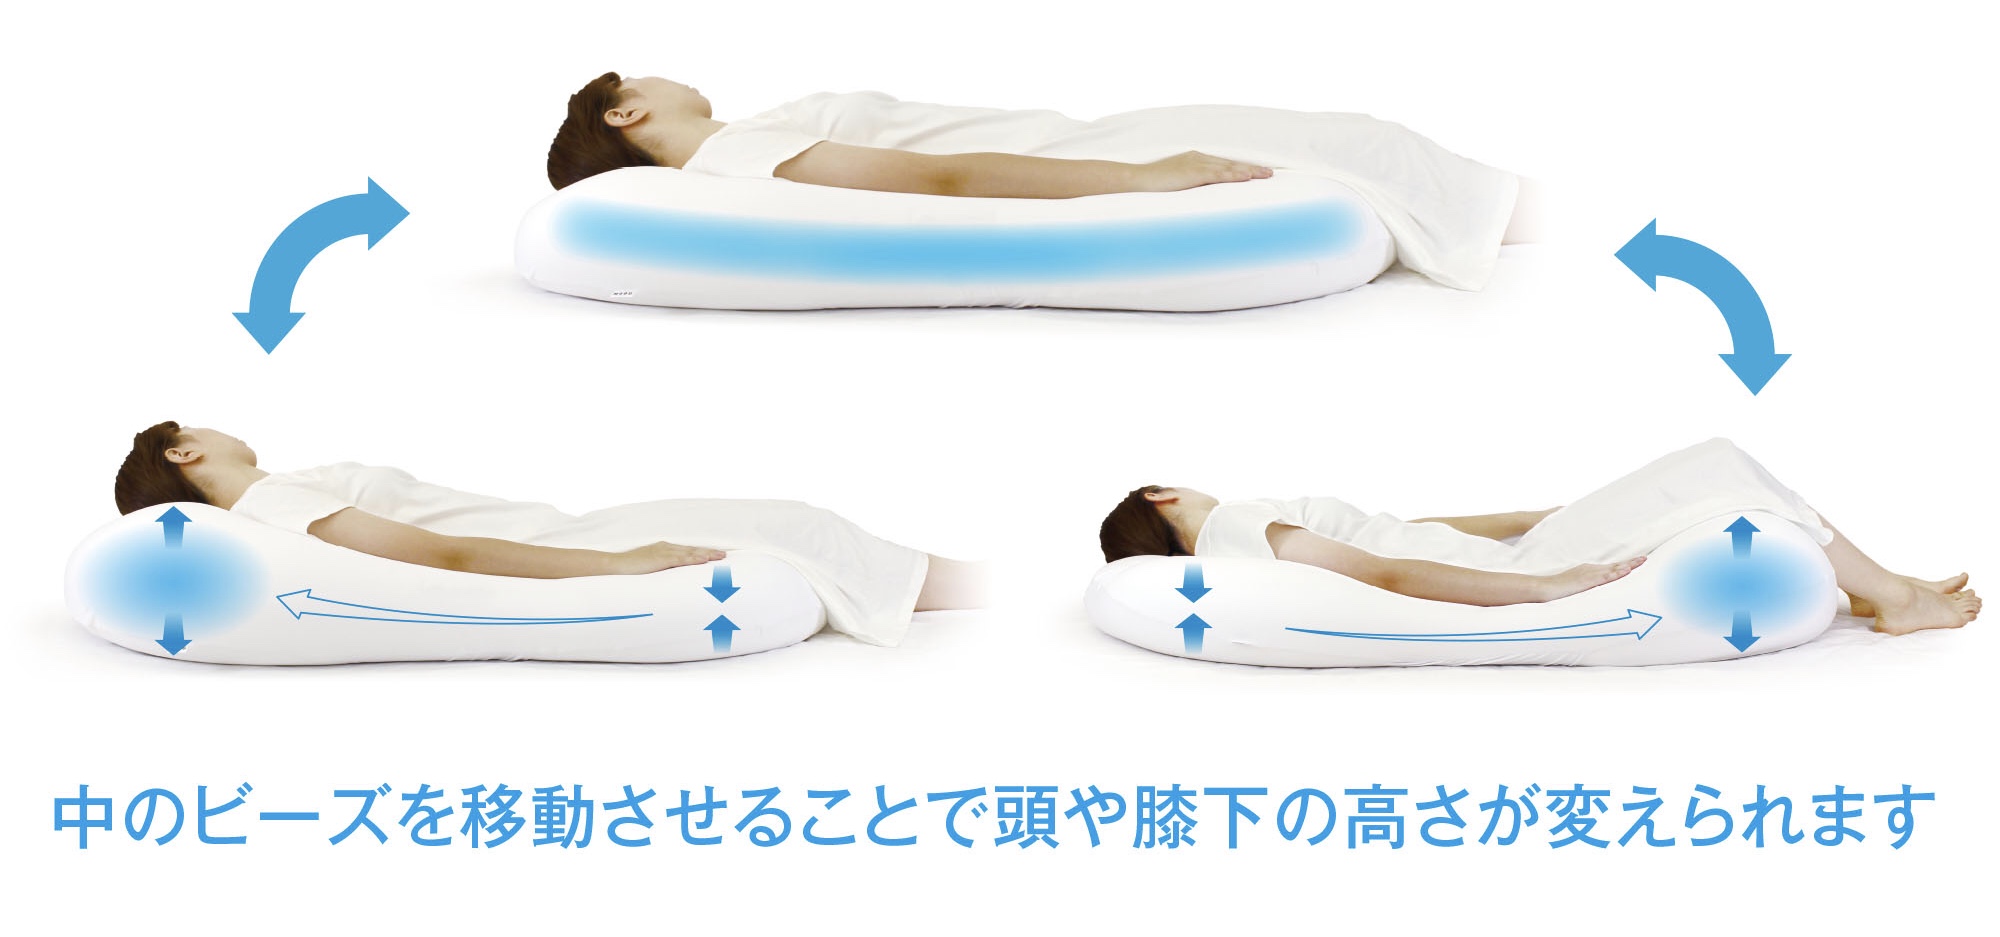 さまざまな形状に形を変えるビーズクッションの上で眠る女性